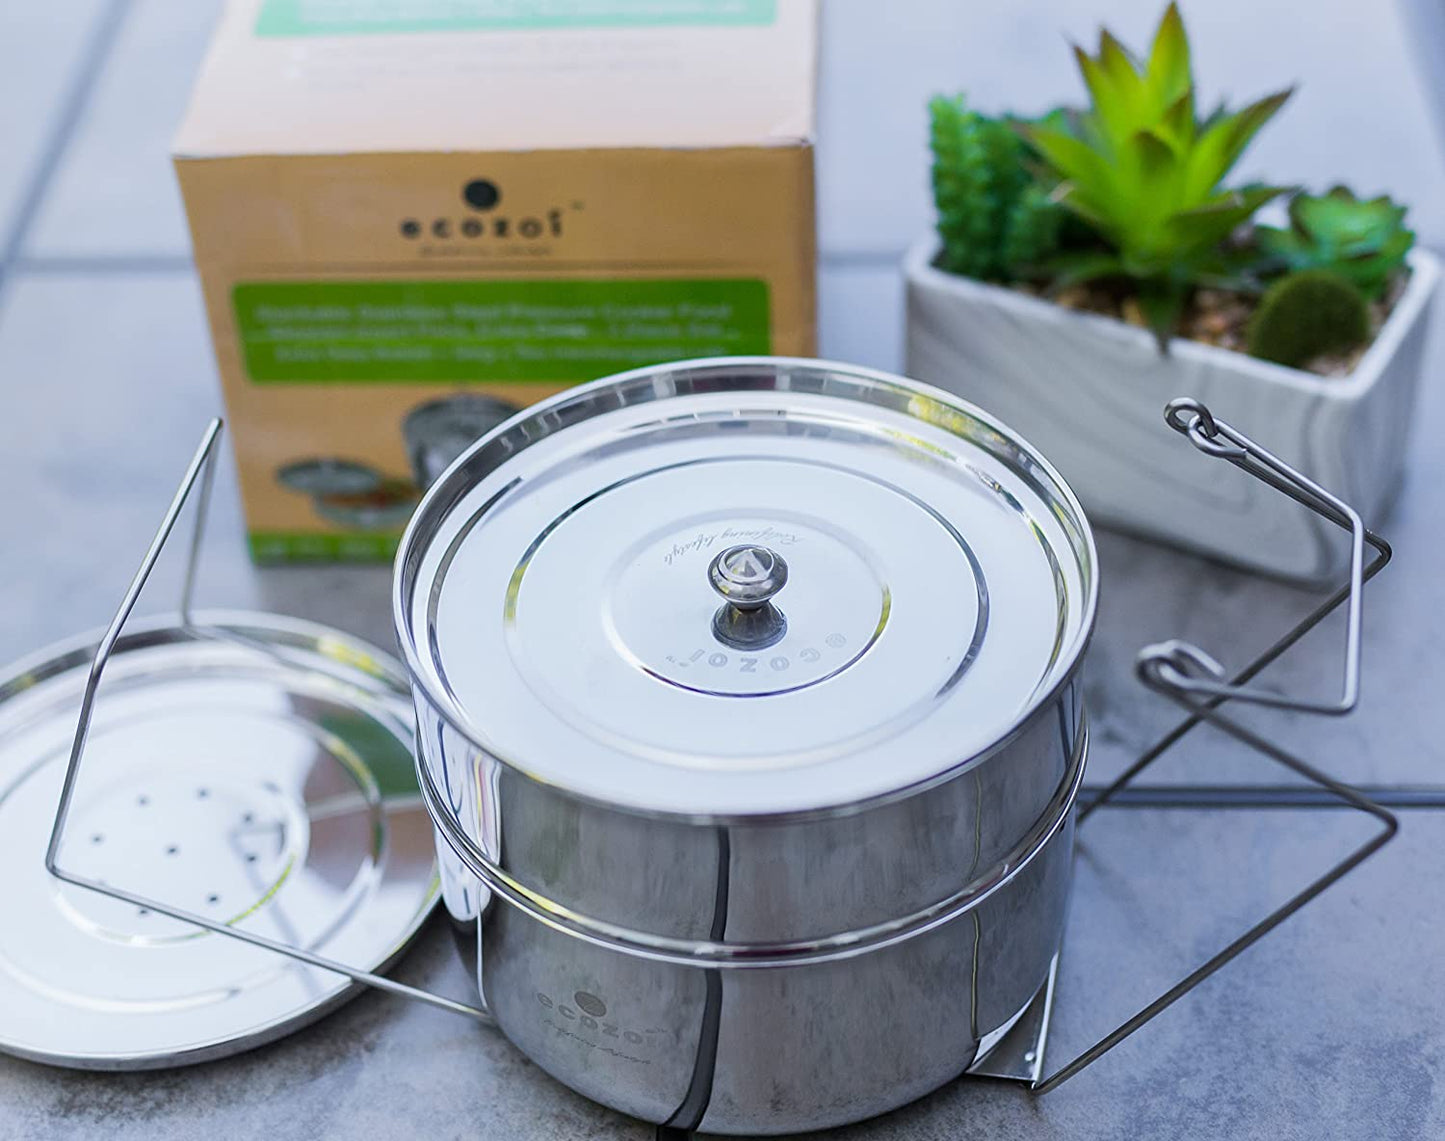 Instant Pot Insert Pans, 2 Tier for 3 Qt / 5 Qt Pressure Cookers by ecozoi